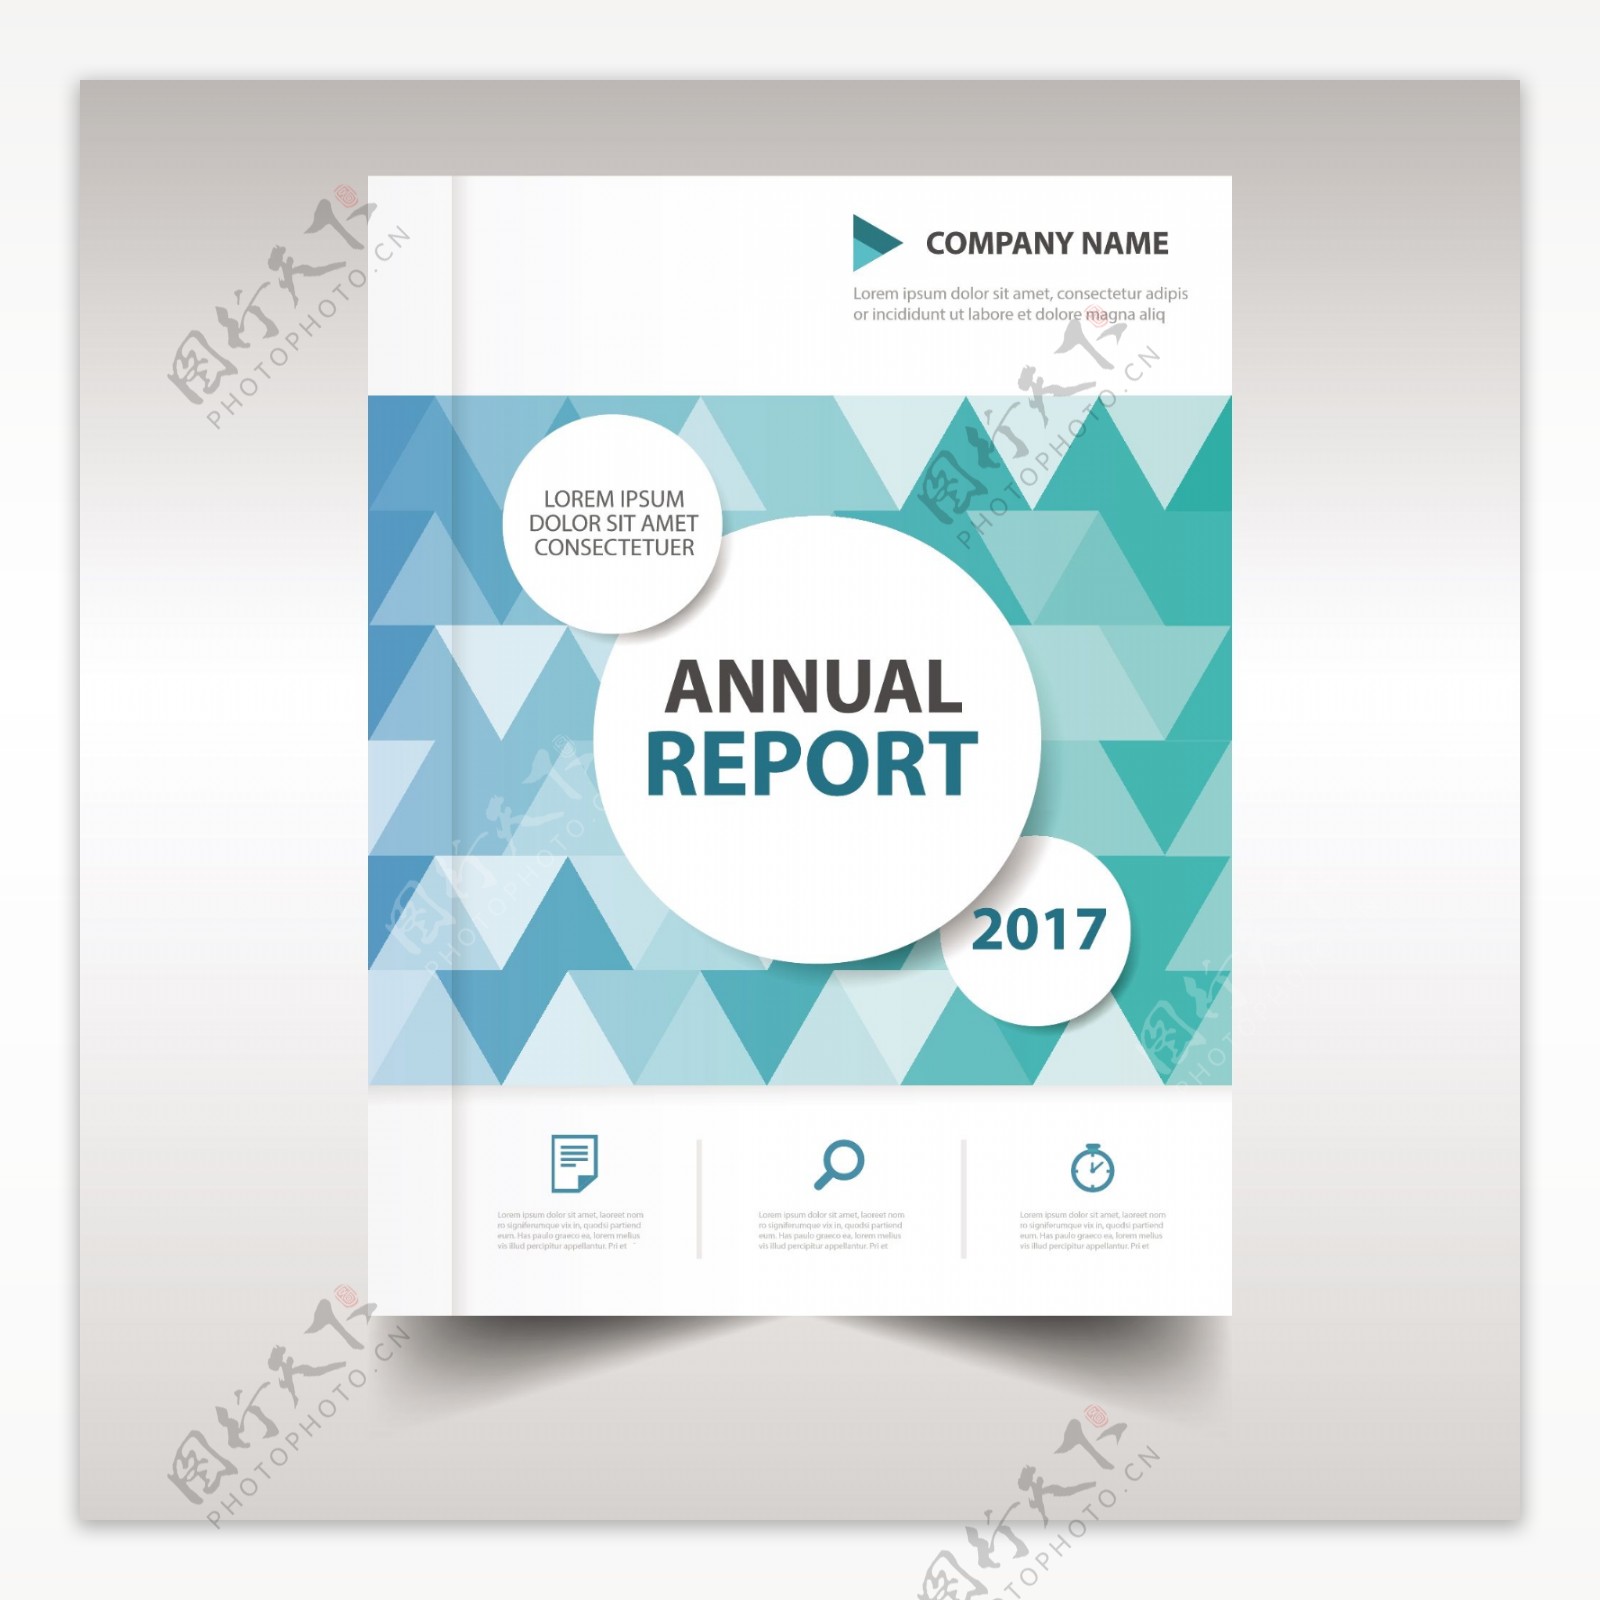 蓝色创意年度报告书封面模板